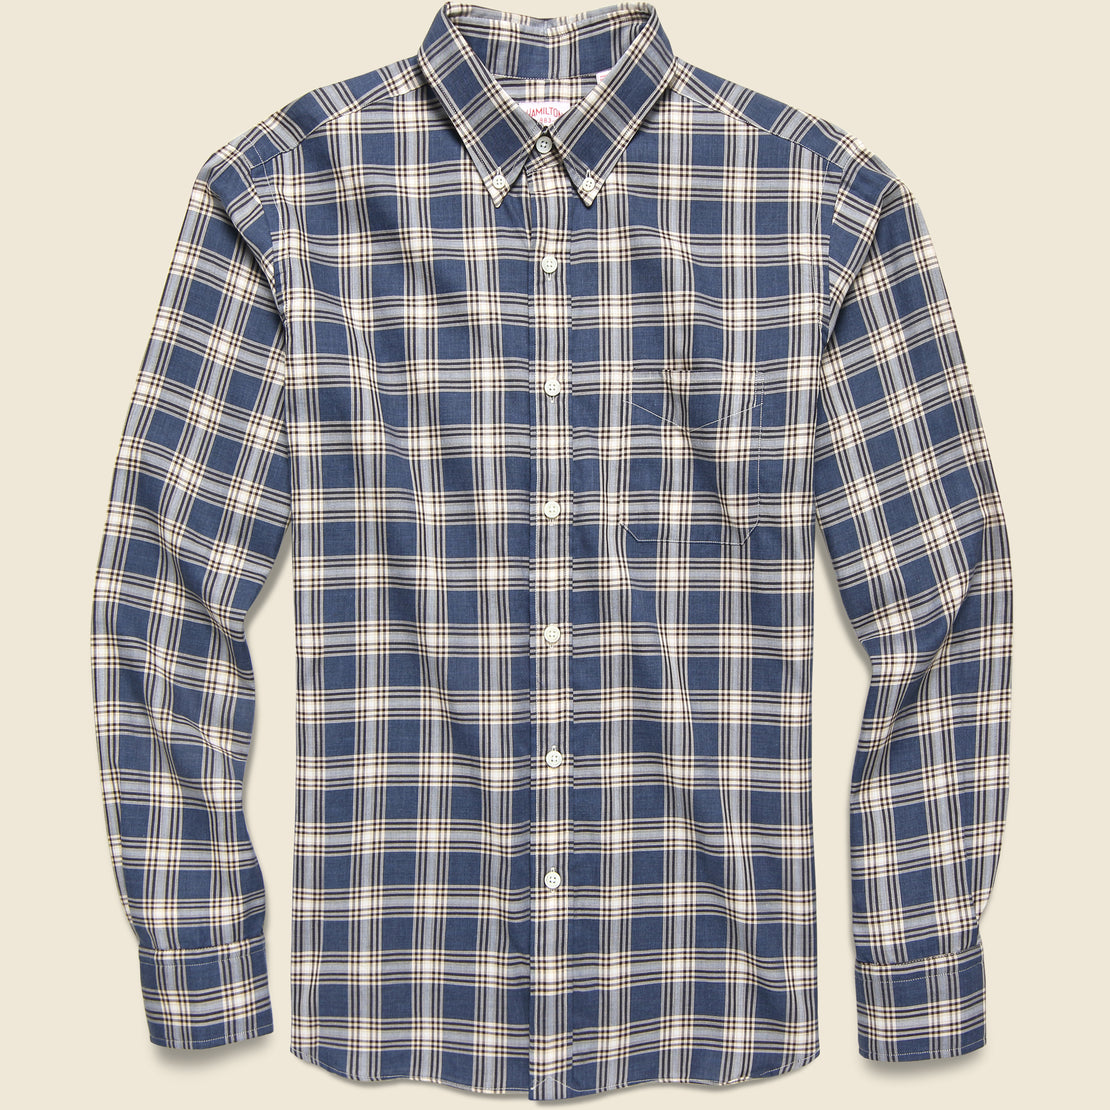 Hamilton Shirt Co. Check Twill Flannel Shirt - Denim Blue/Brown/Cream